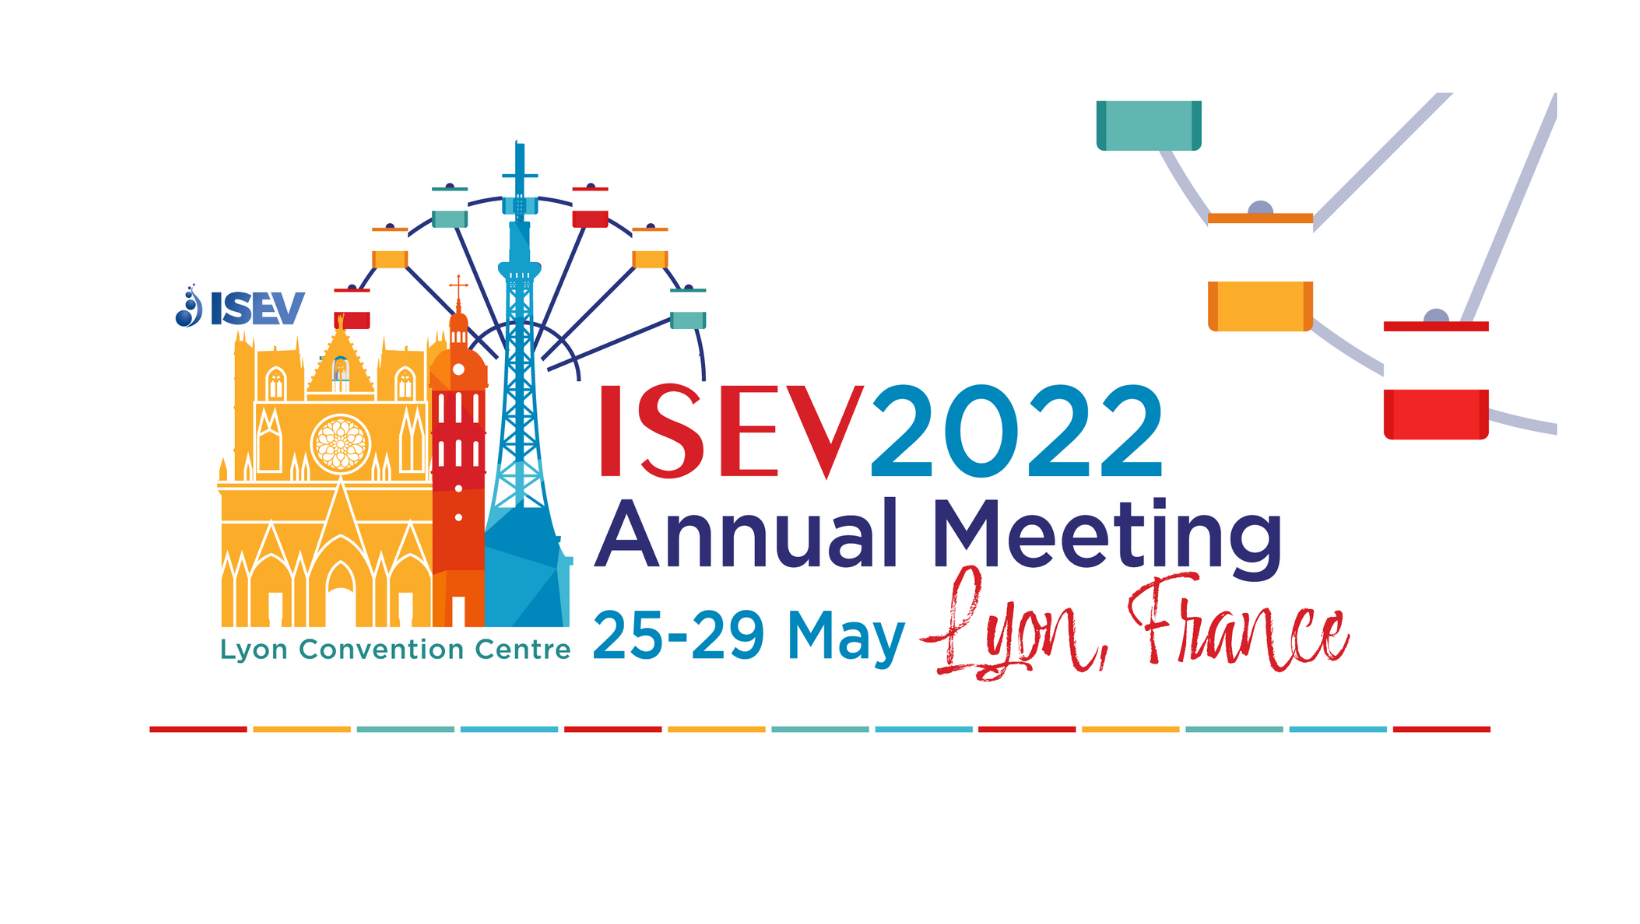 ISEV 2022 Annual Meeting